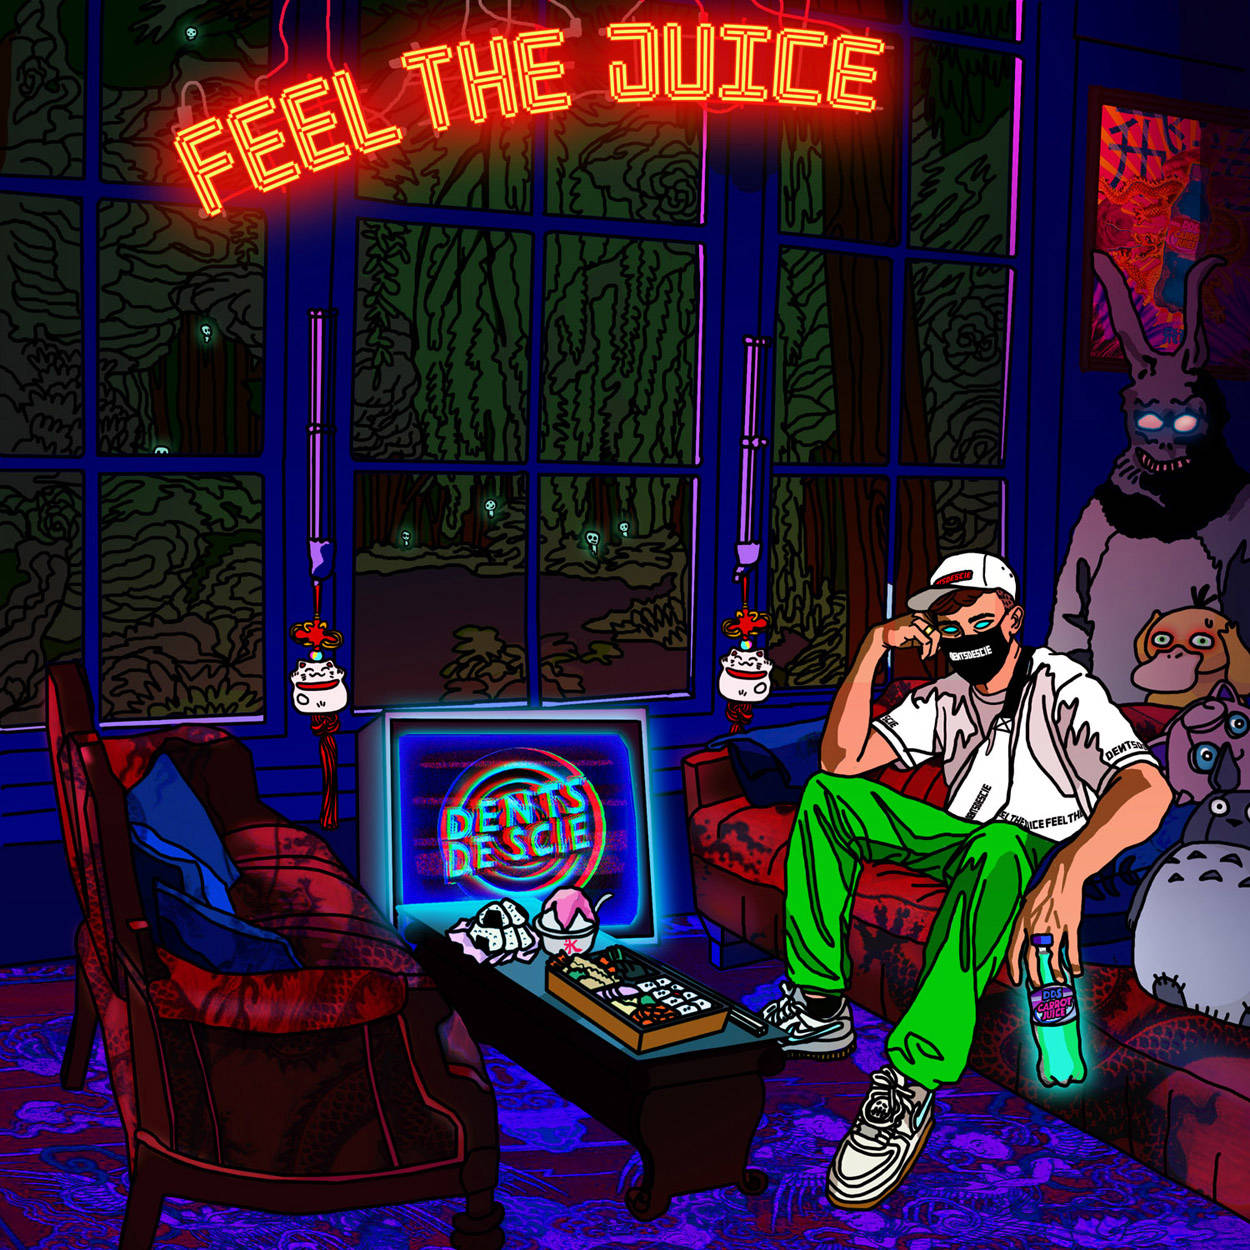 Feel the juice